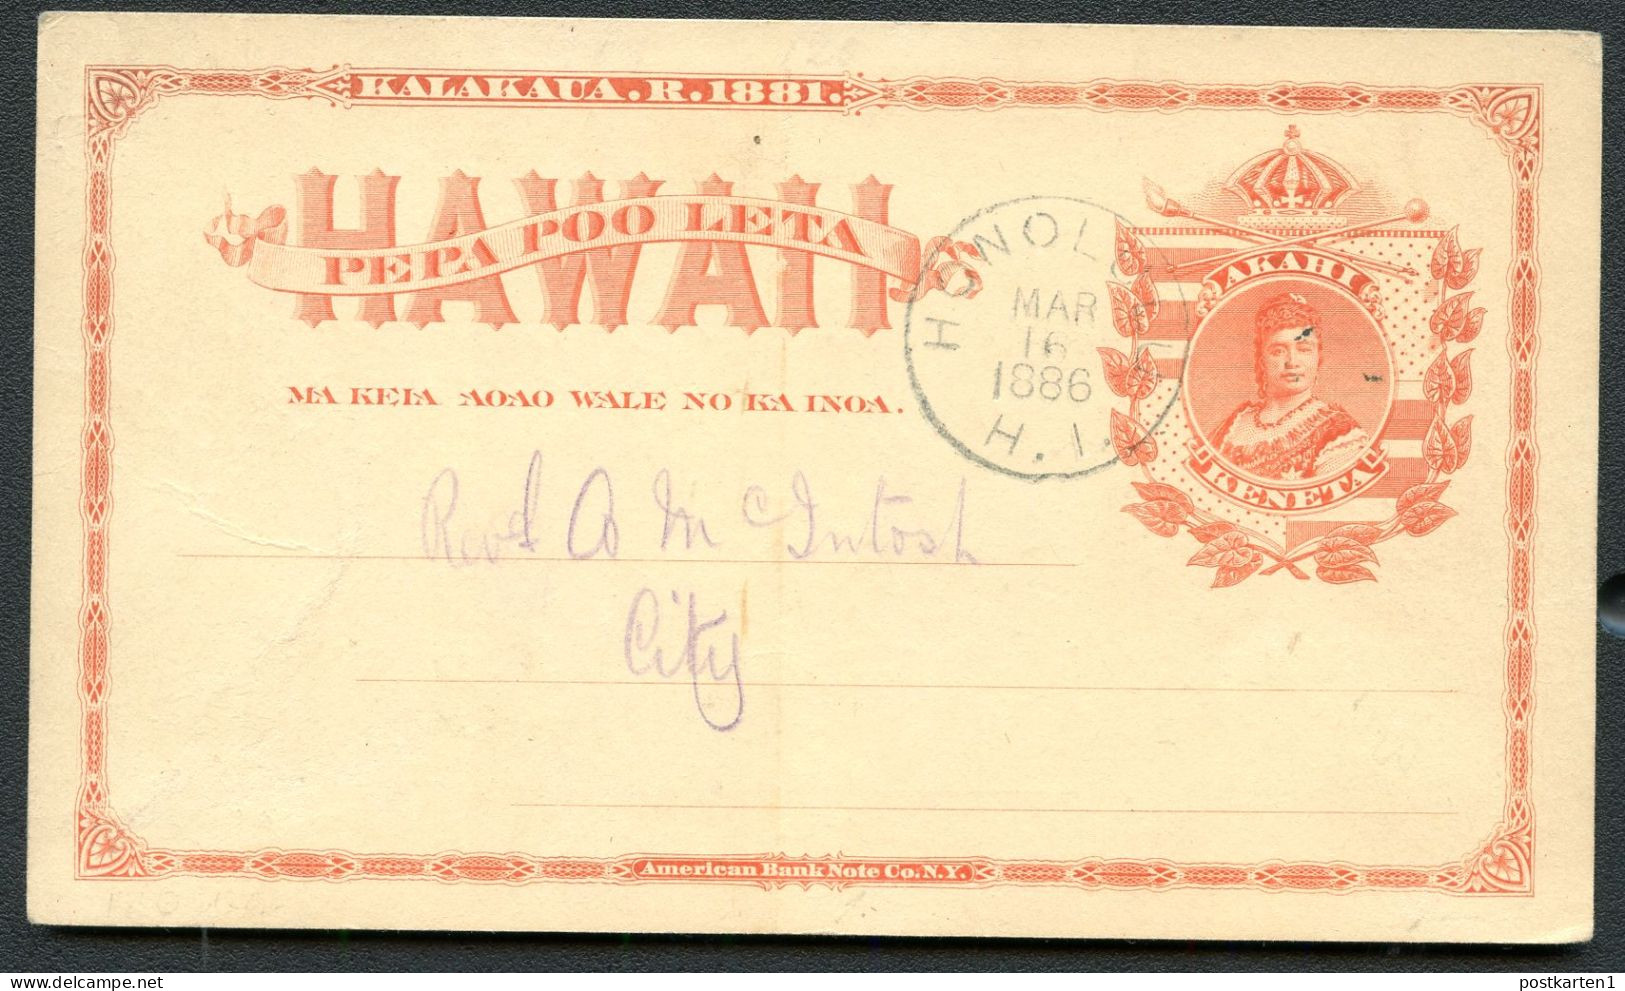 Hawaii Postal Card UX1 Honolulu YMCA Vf 1886 - Hawai